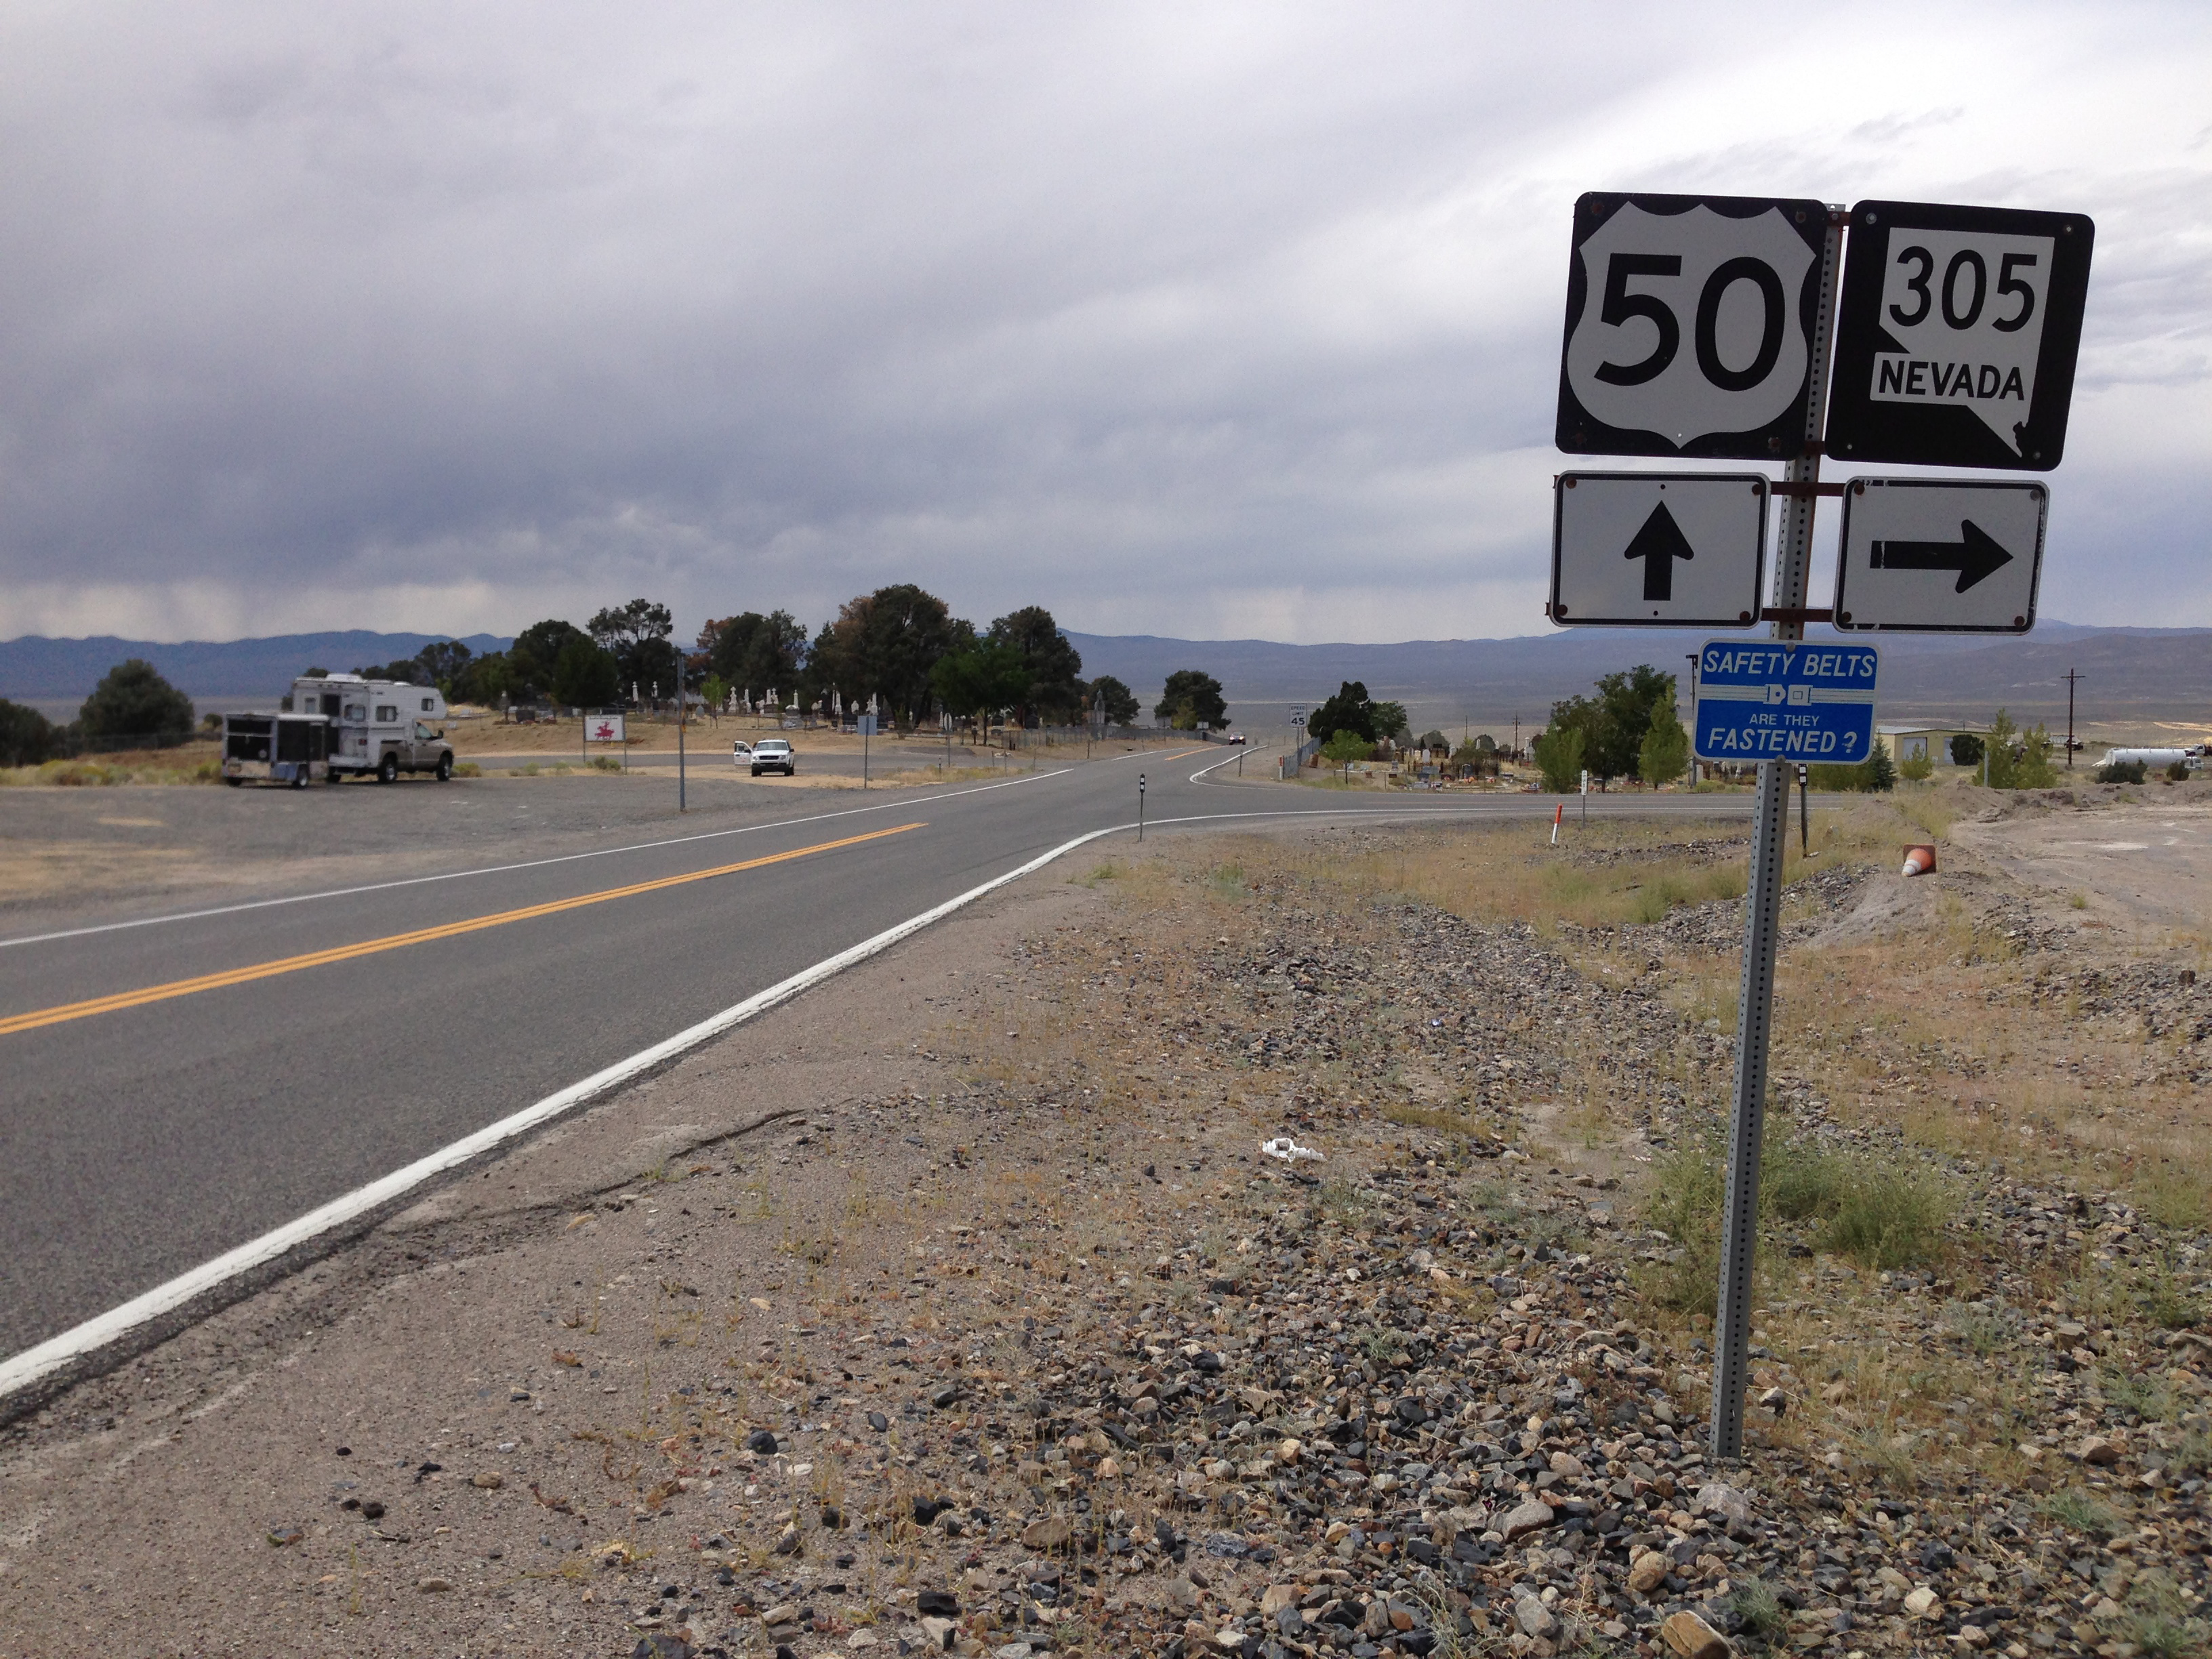 View 56. Остин Невада. Route 50 Nevada эмблема.